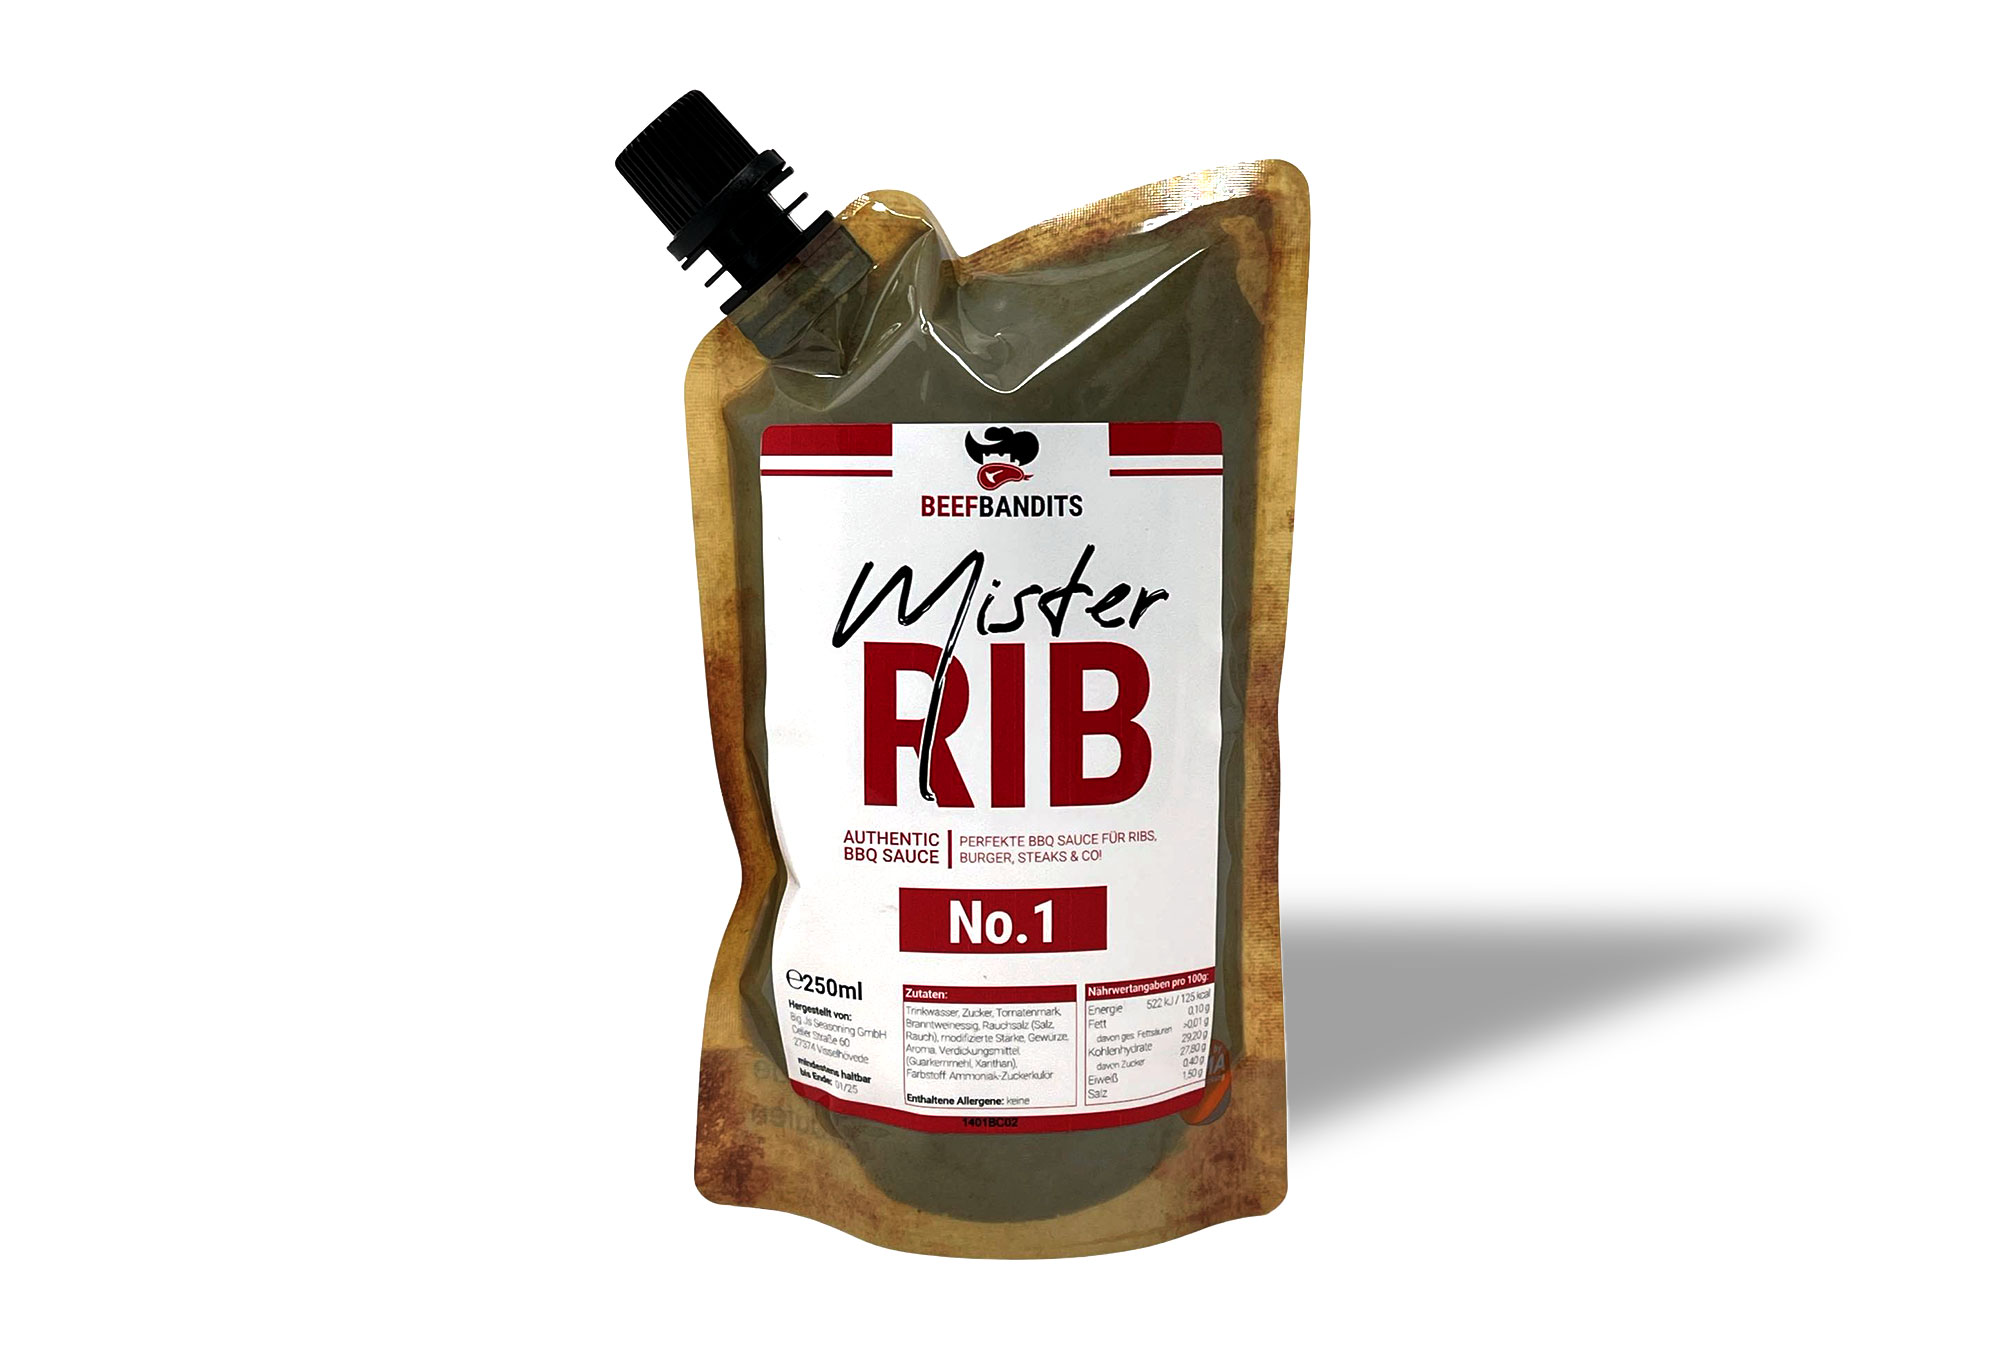 Mister Rib BBQ Sauce